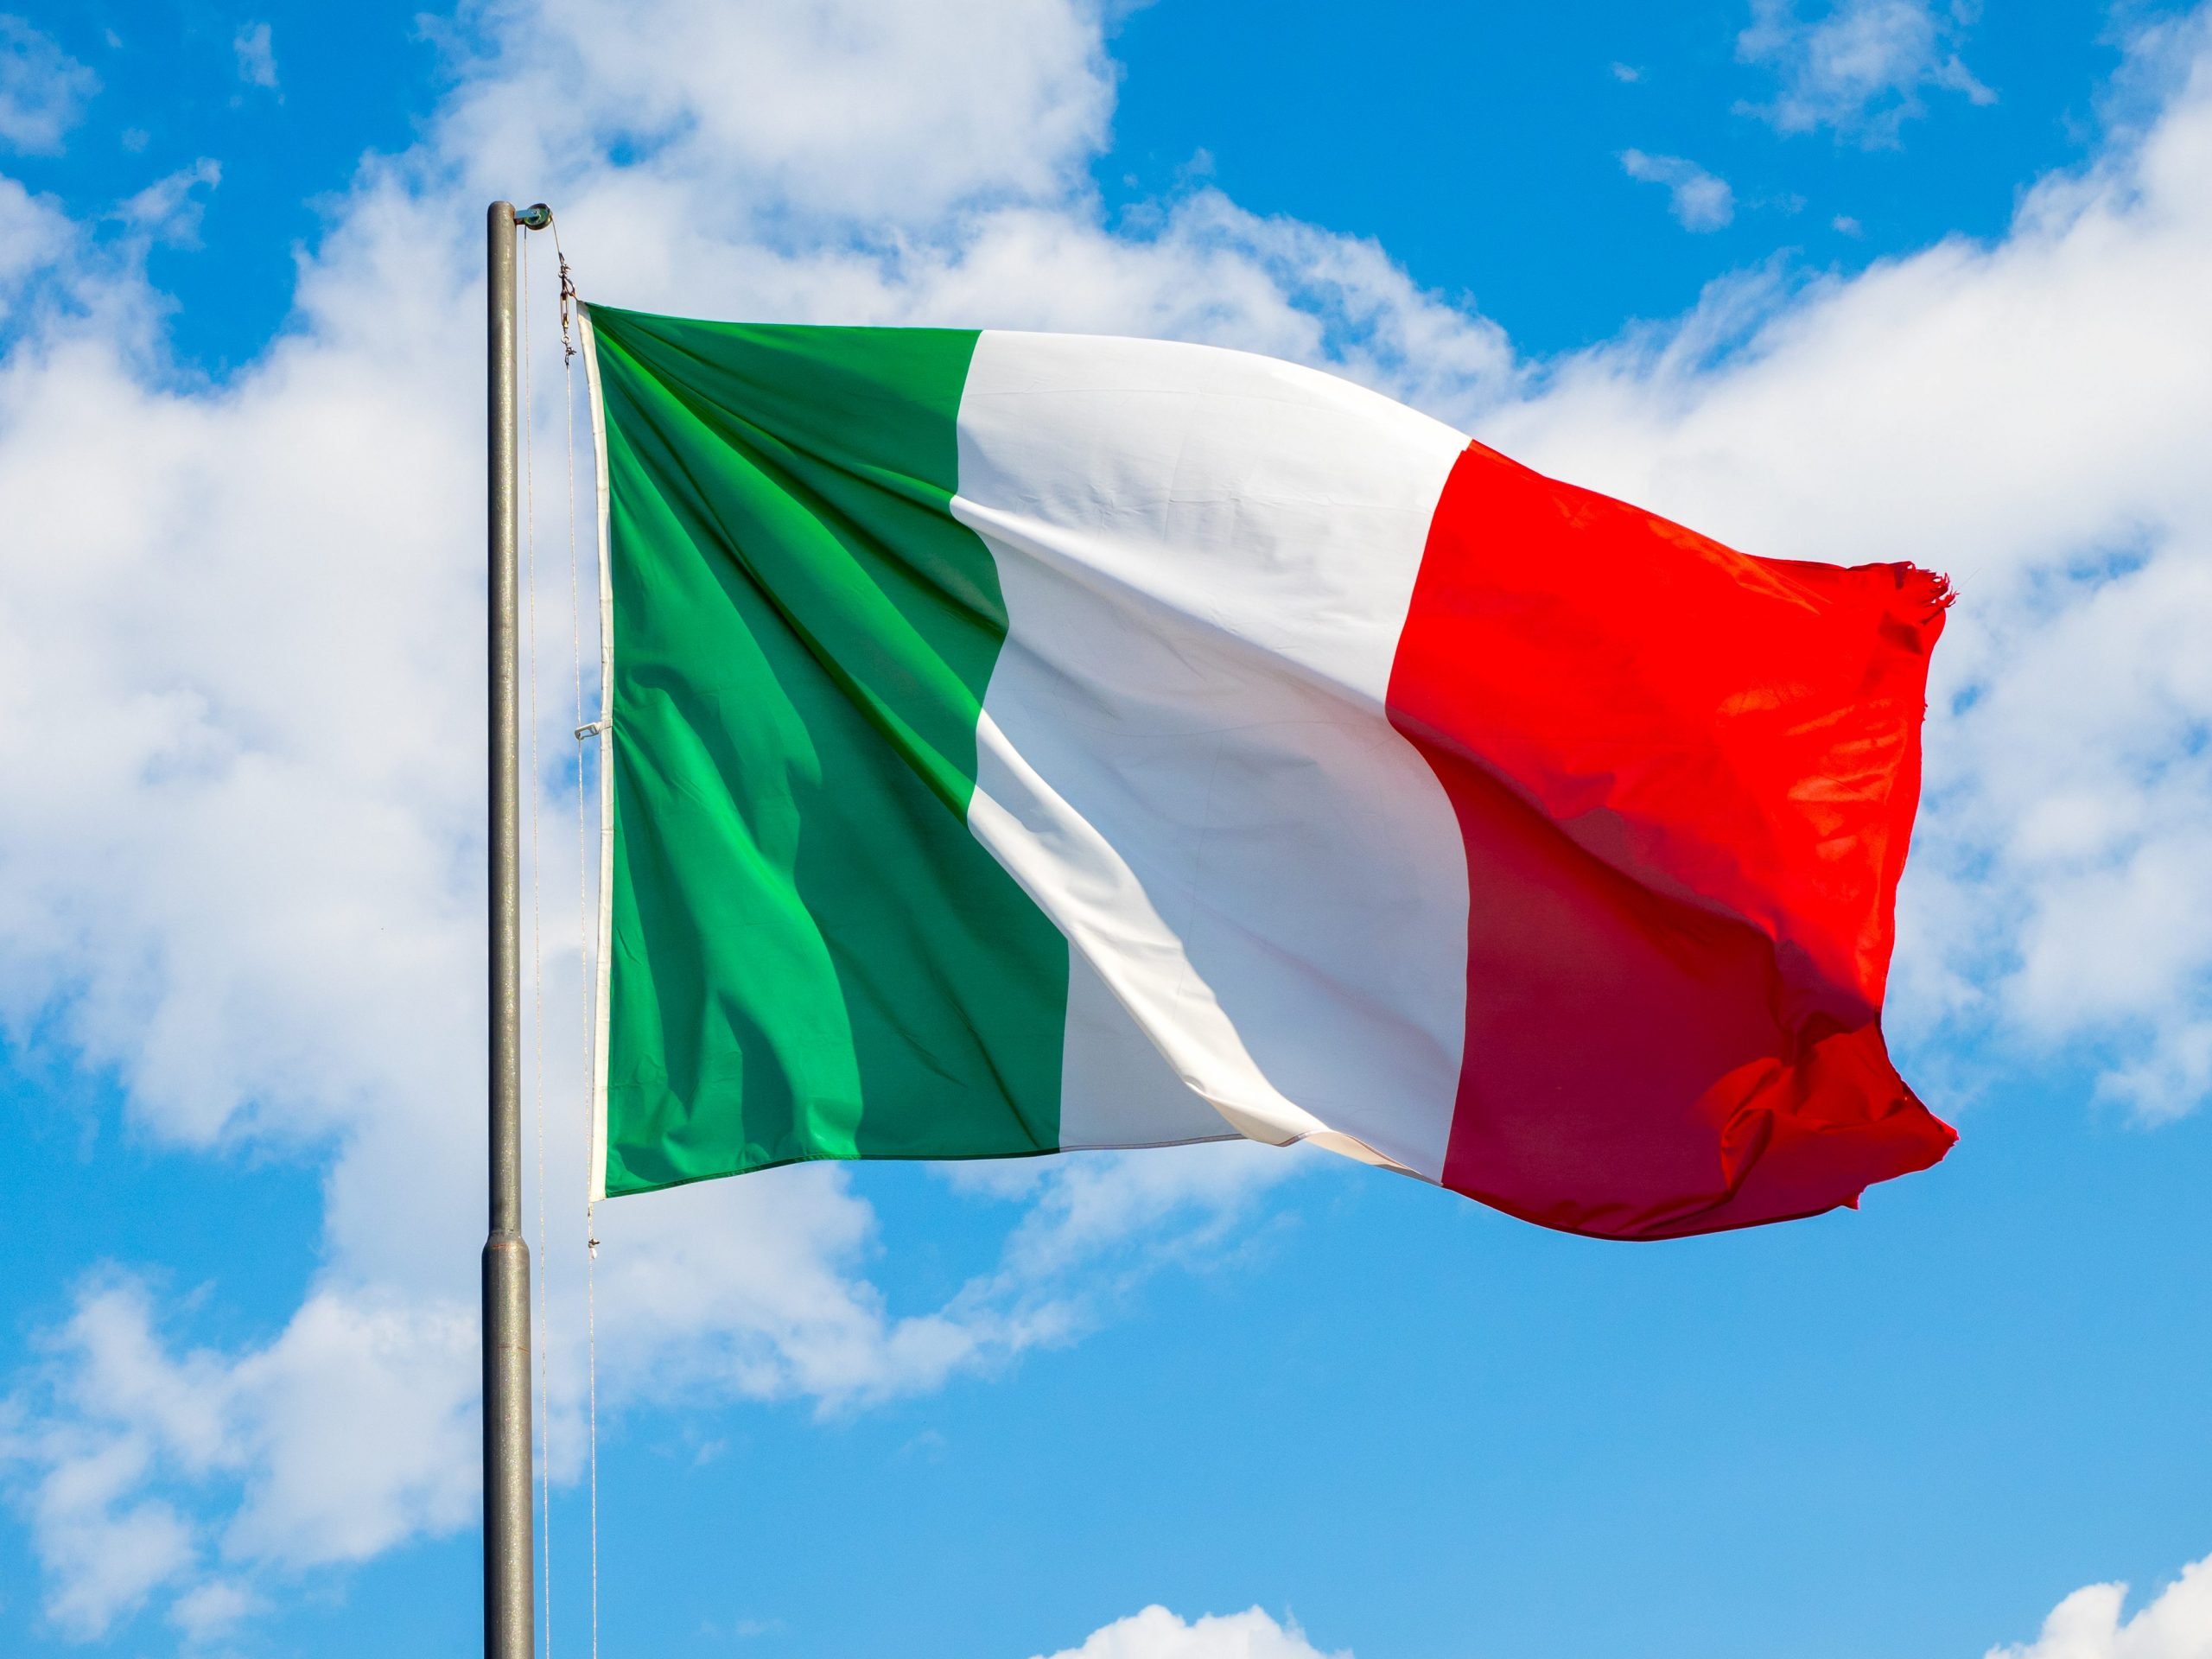 Invece di festeggiare, muoviamoci a unire davvero l’Italia